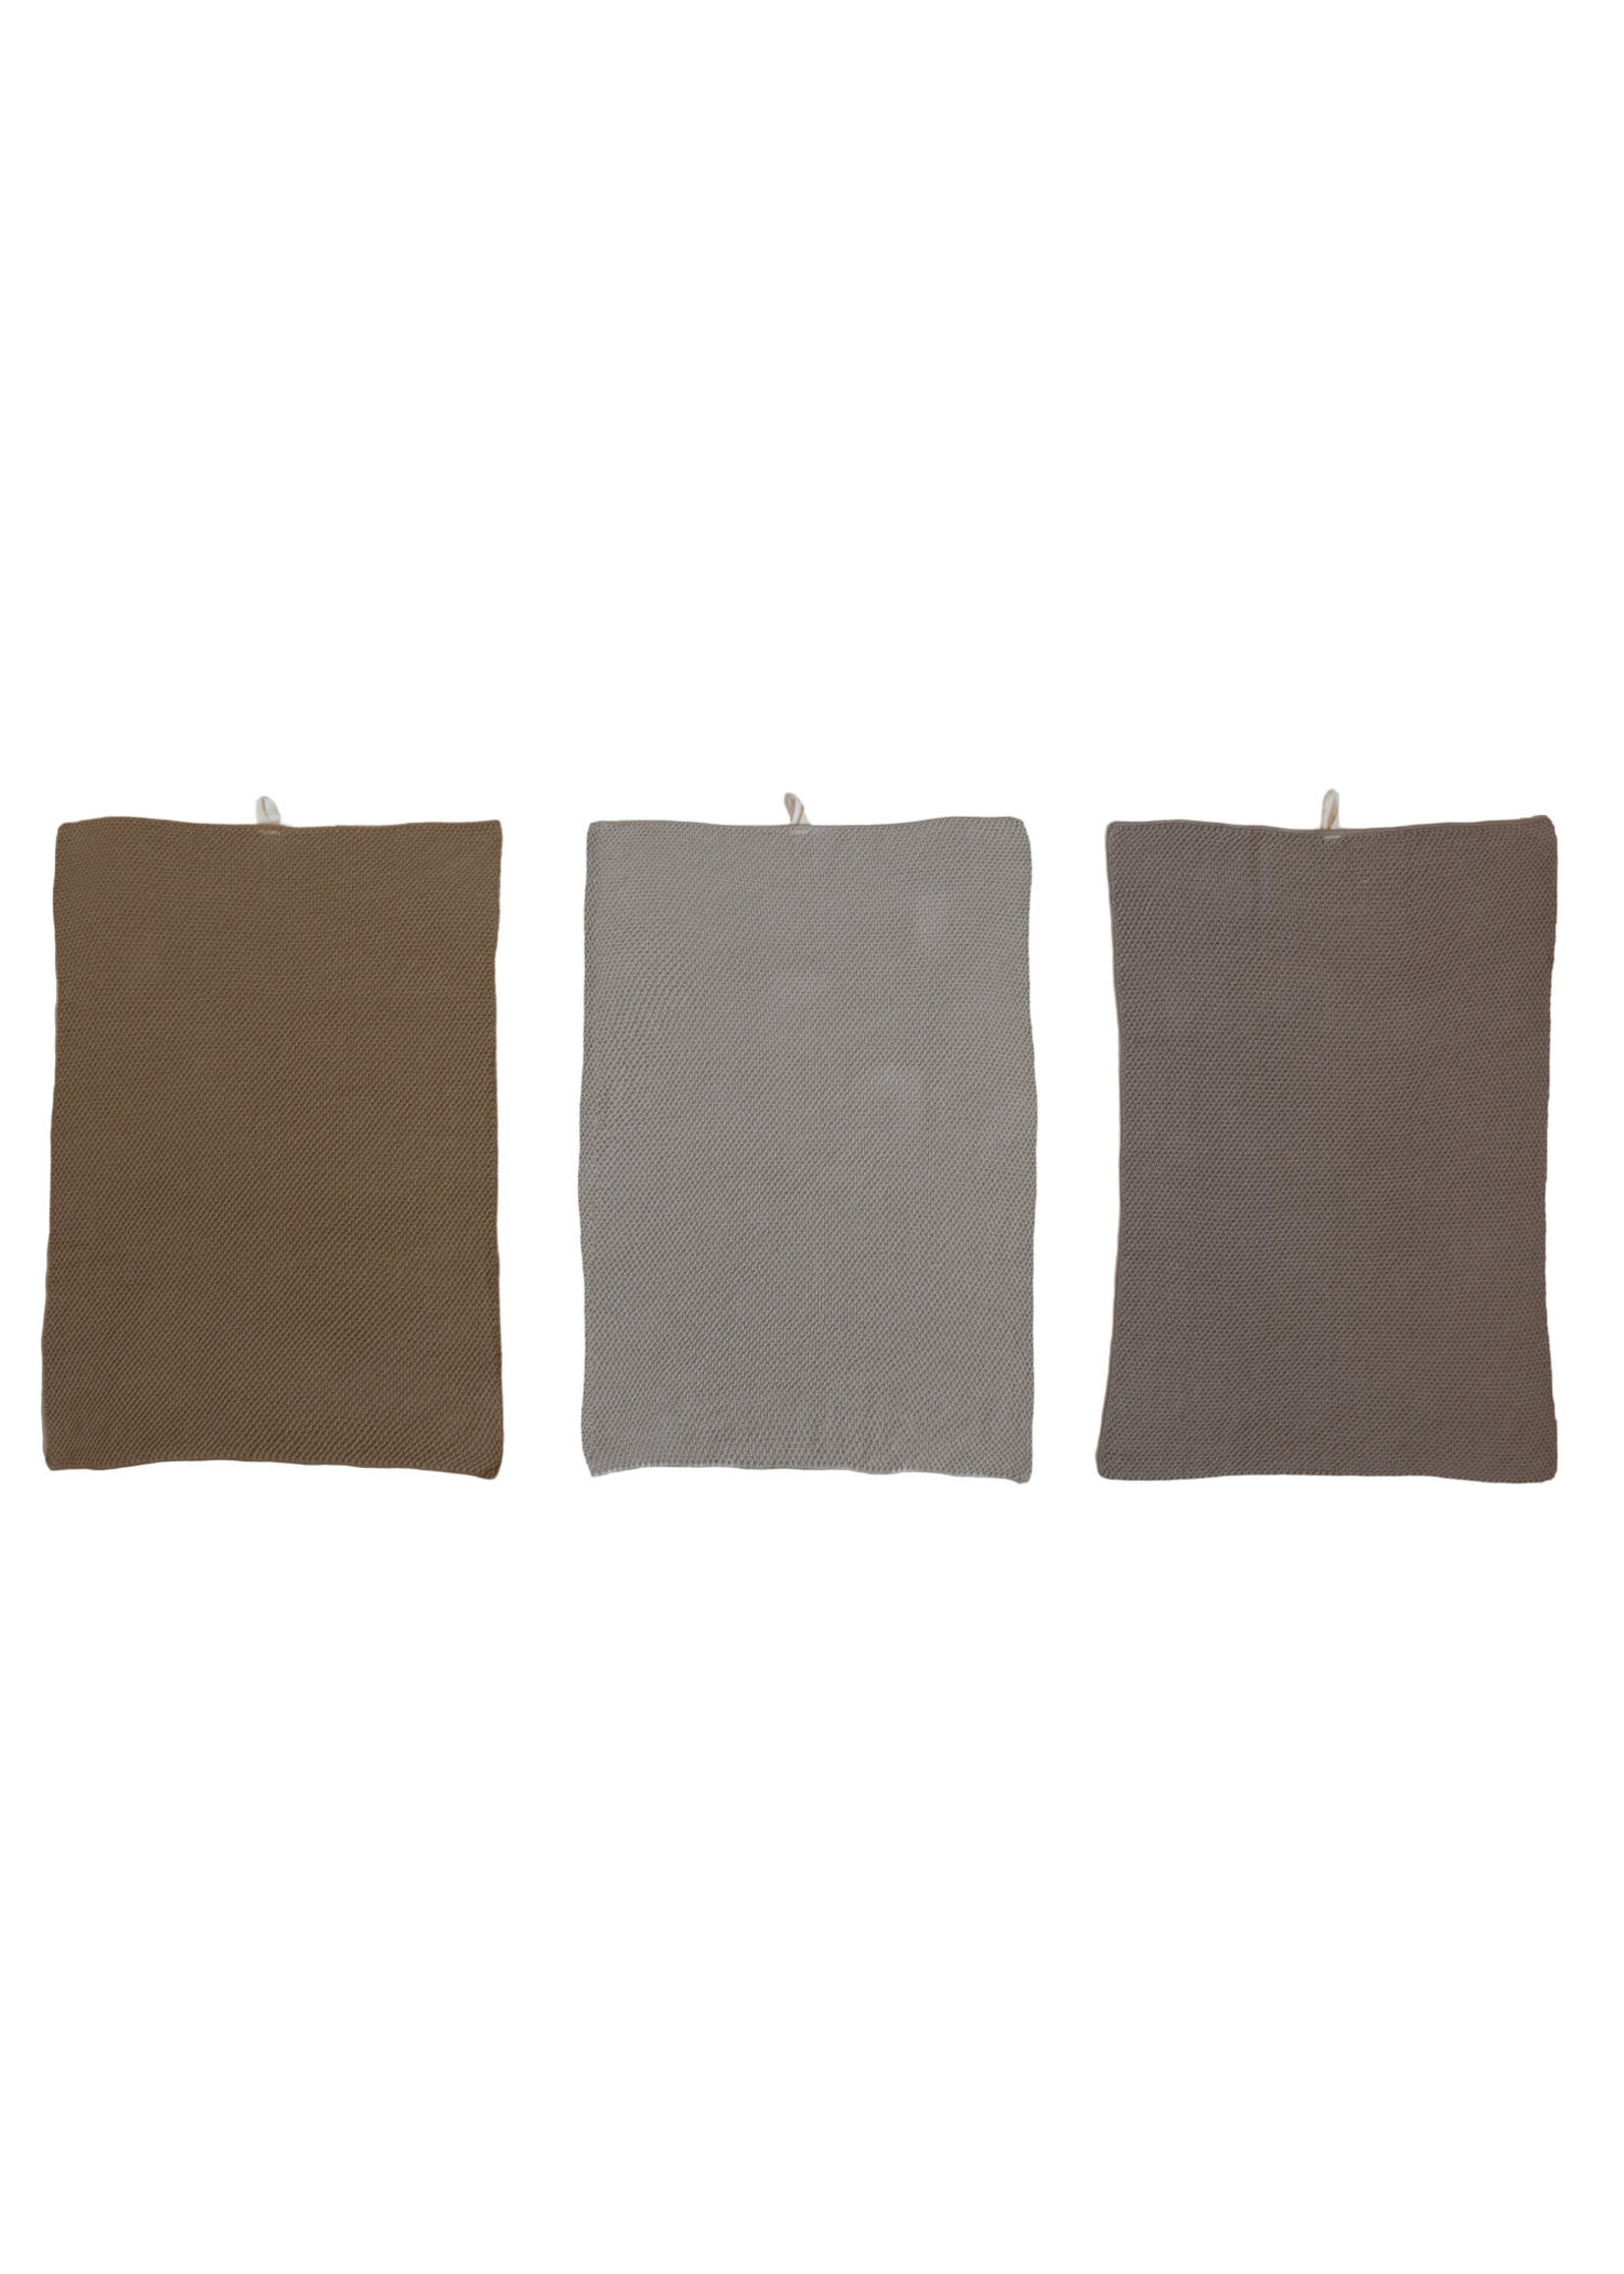 Cotton Knit Tea Towels, set of 3